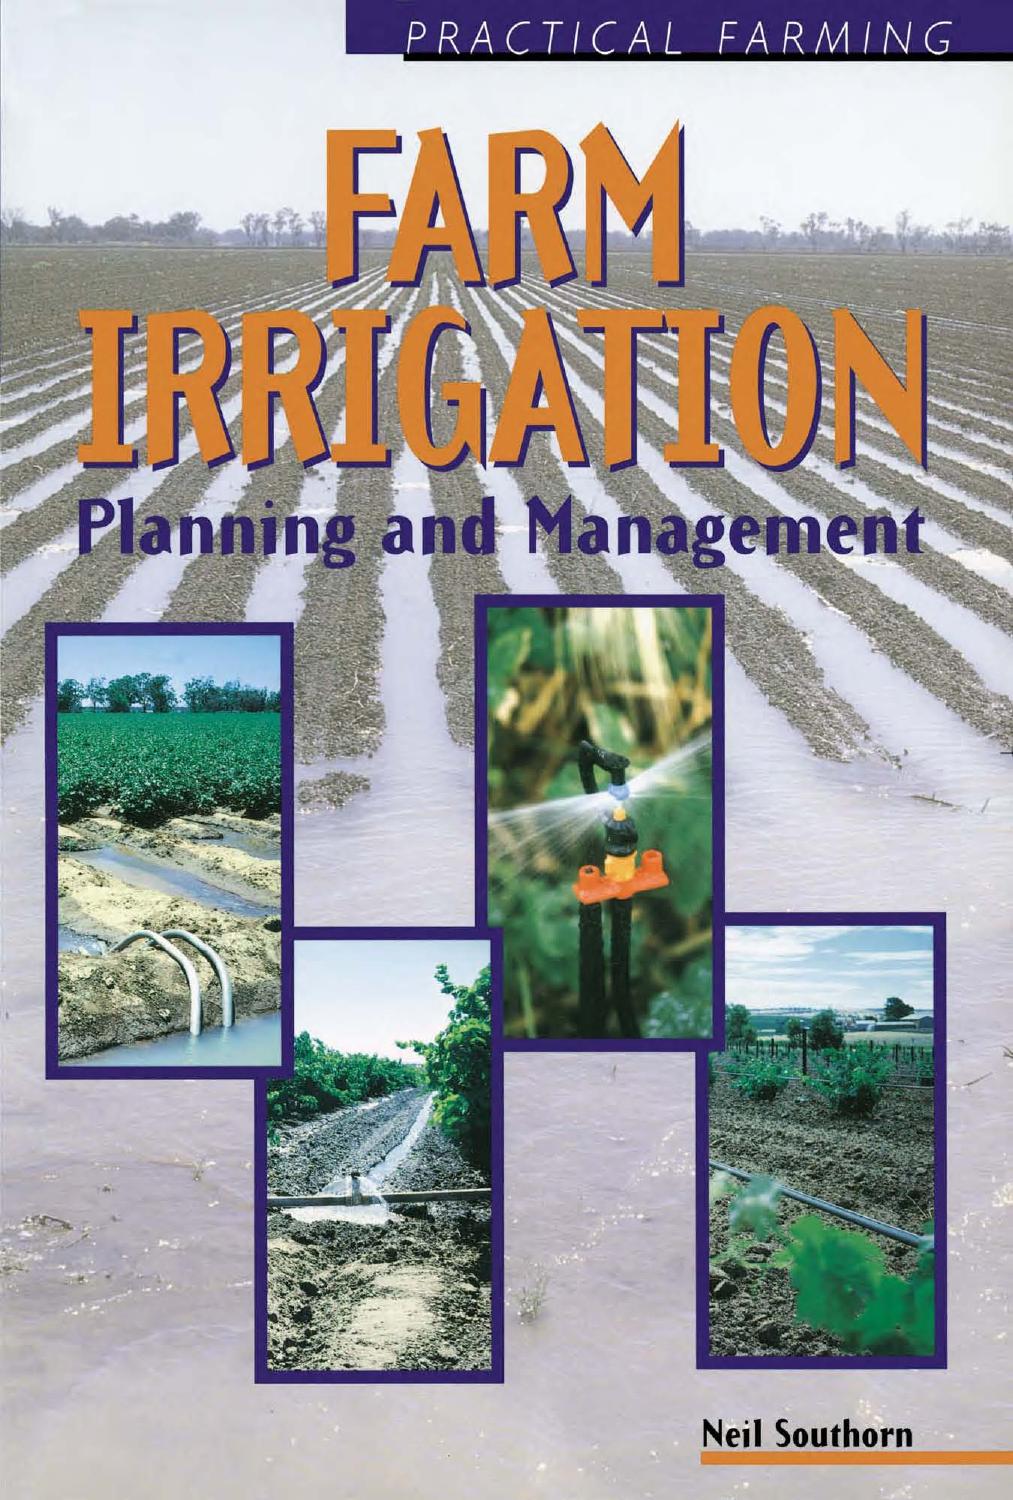 Farm Irrigation Practical Farming  1997